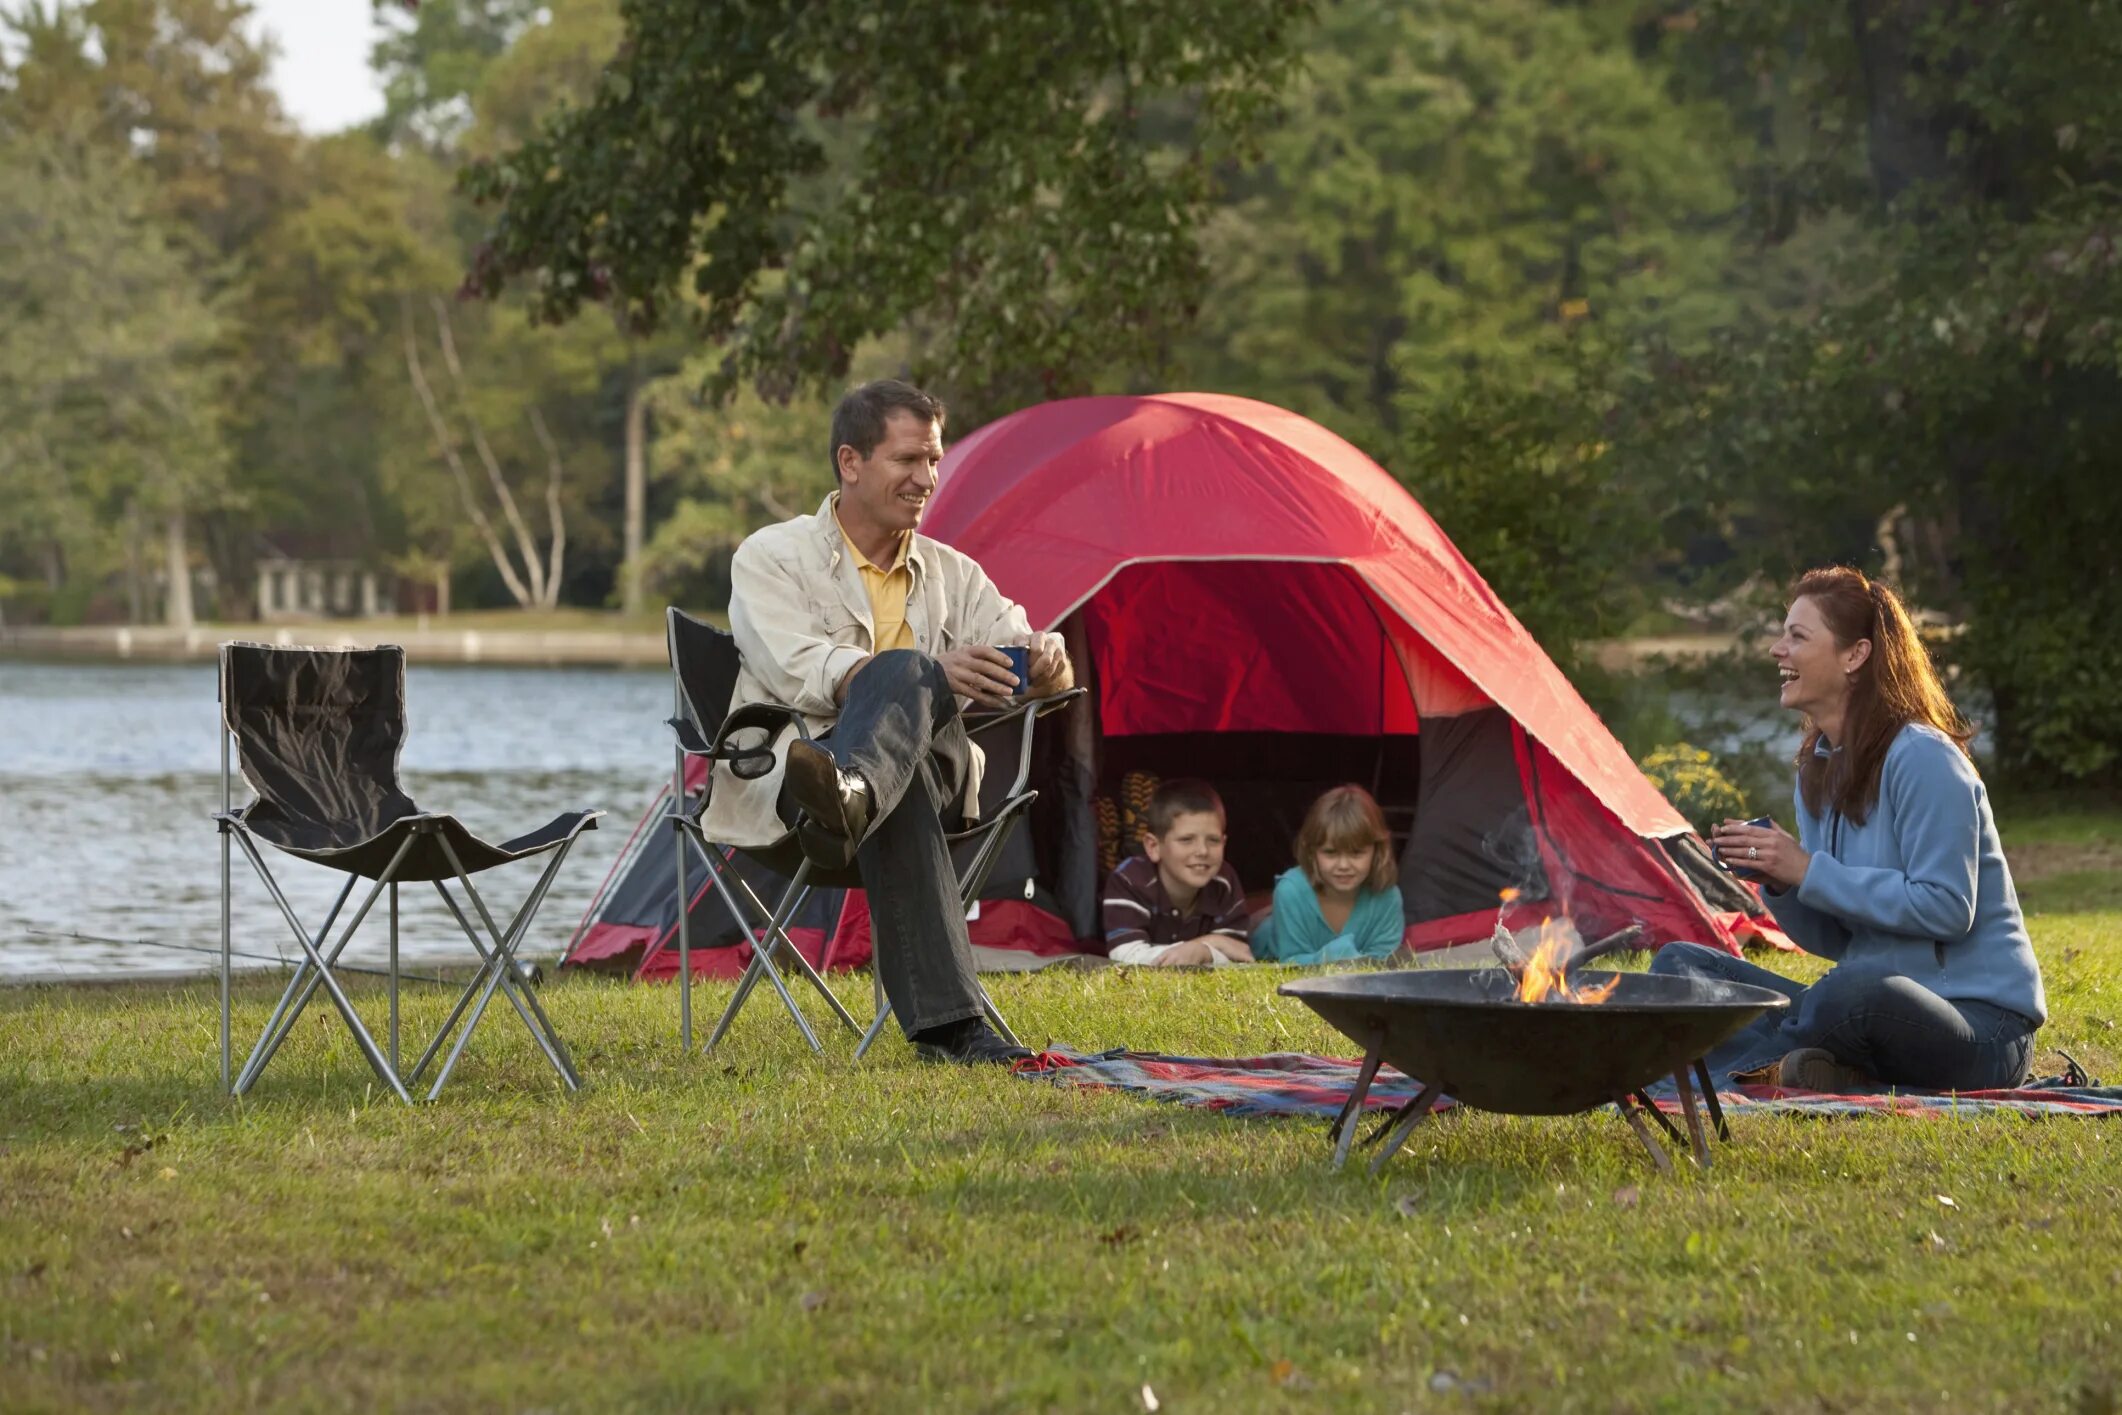 Come on camp. Палатка на природе. Отдыхаем на природе. Пикник с семьей на природе. Пикник на природе с палатками.